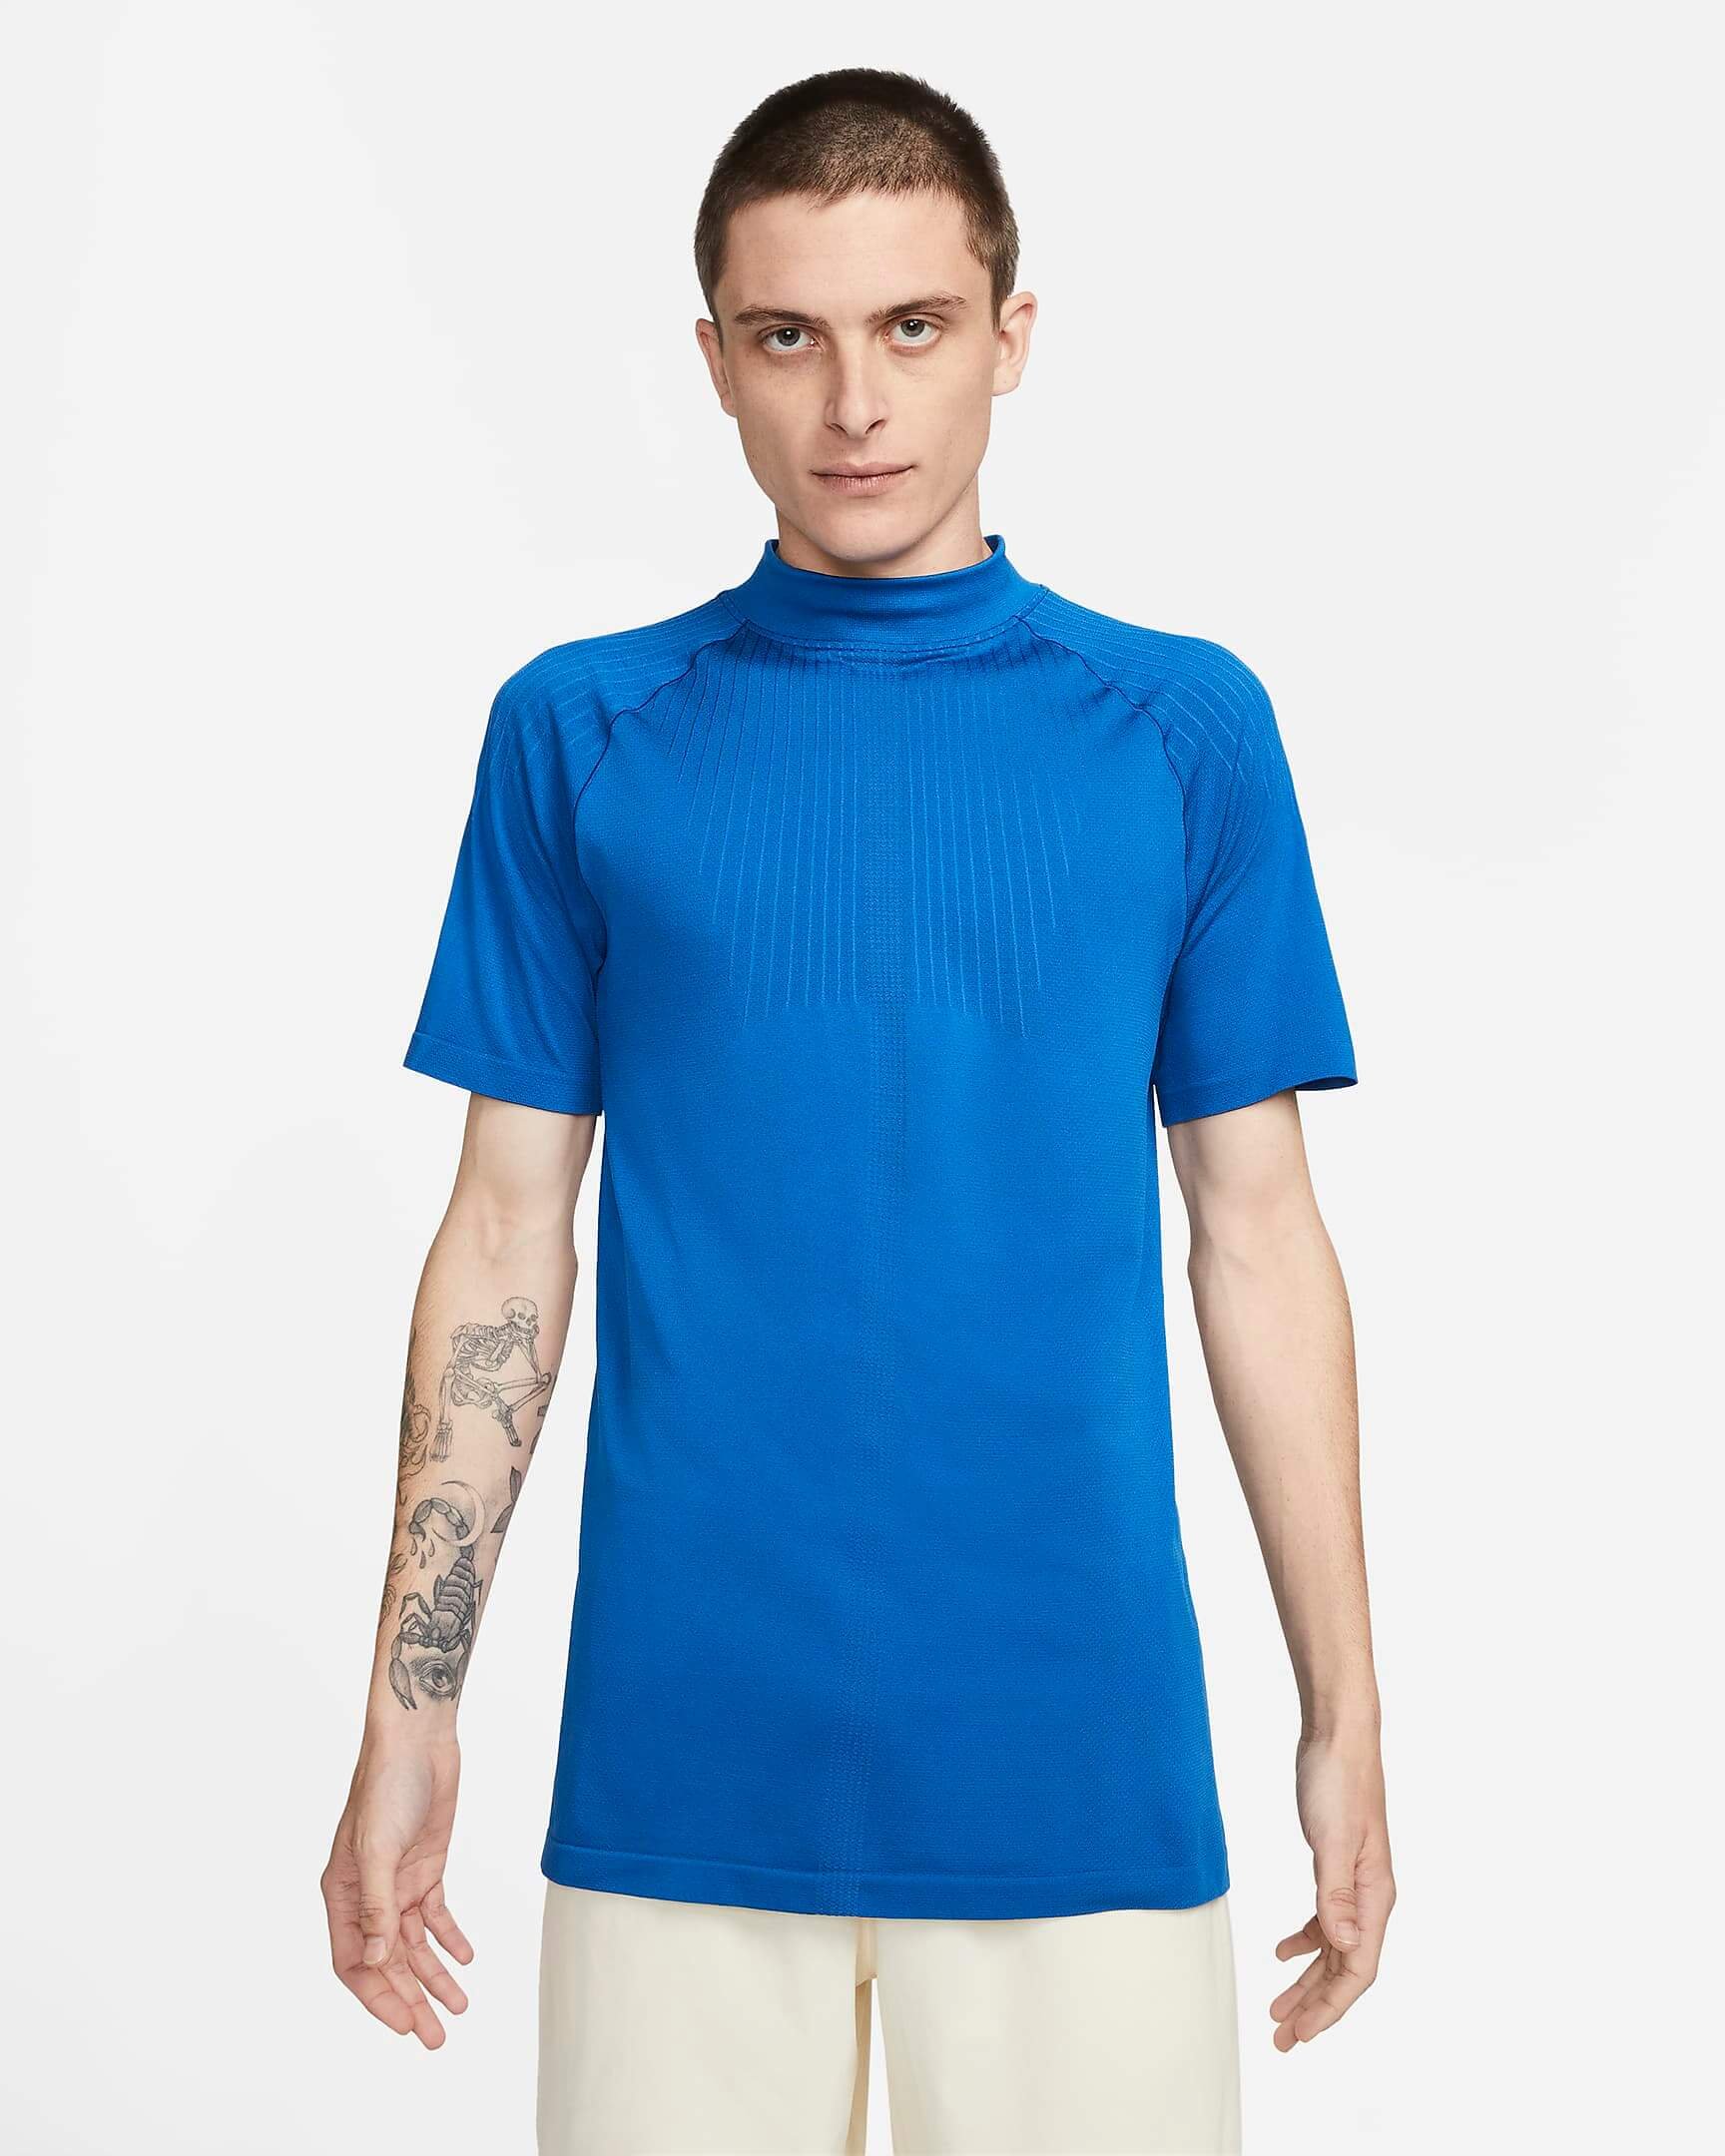 CNK-Nike-MMW-mens-top-blue.jpeg